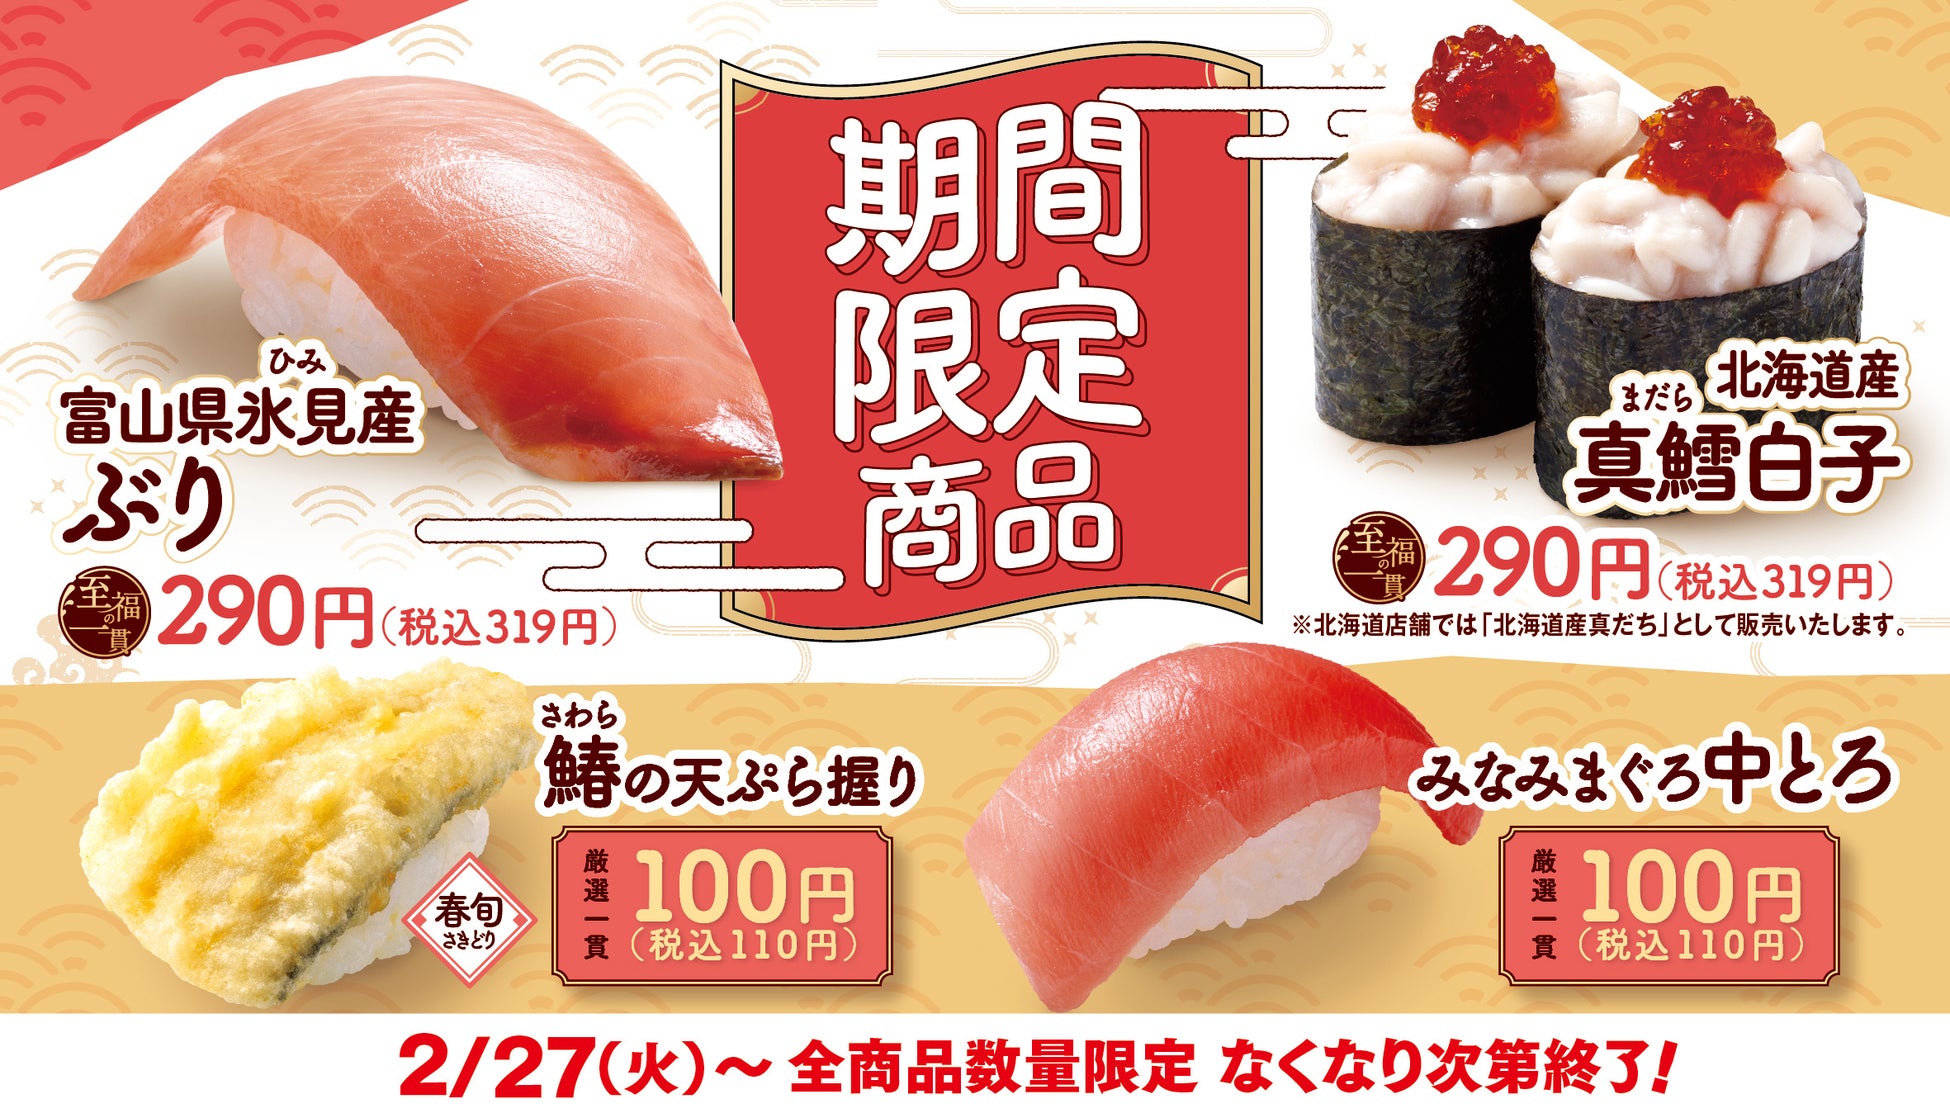 日本の食文化の危機！まぐろ漁獲量が減っている!?高品質なまぐろを提供し続け、食文化に貢献する為のCM放送決定